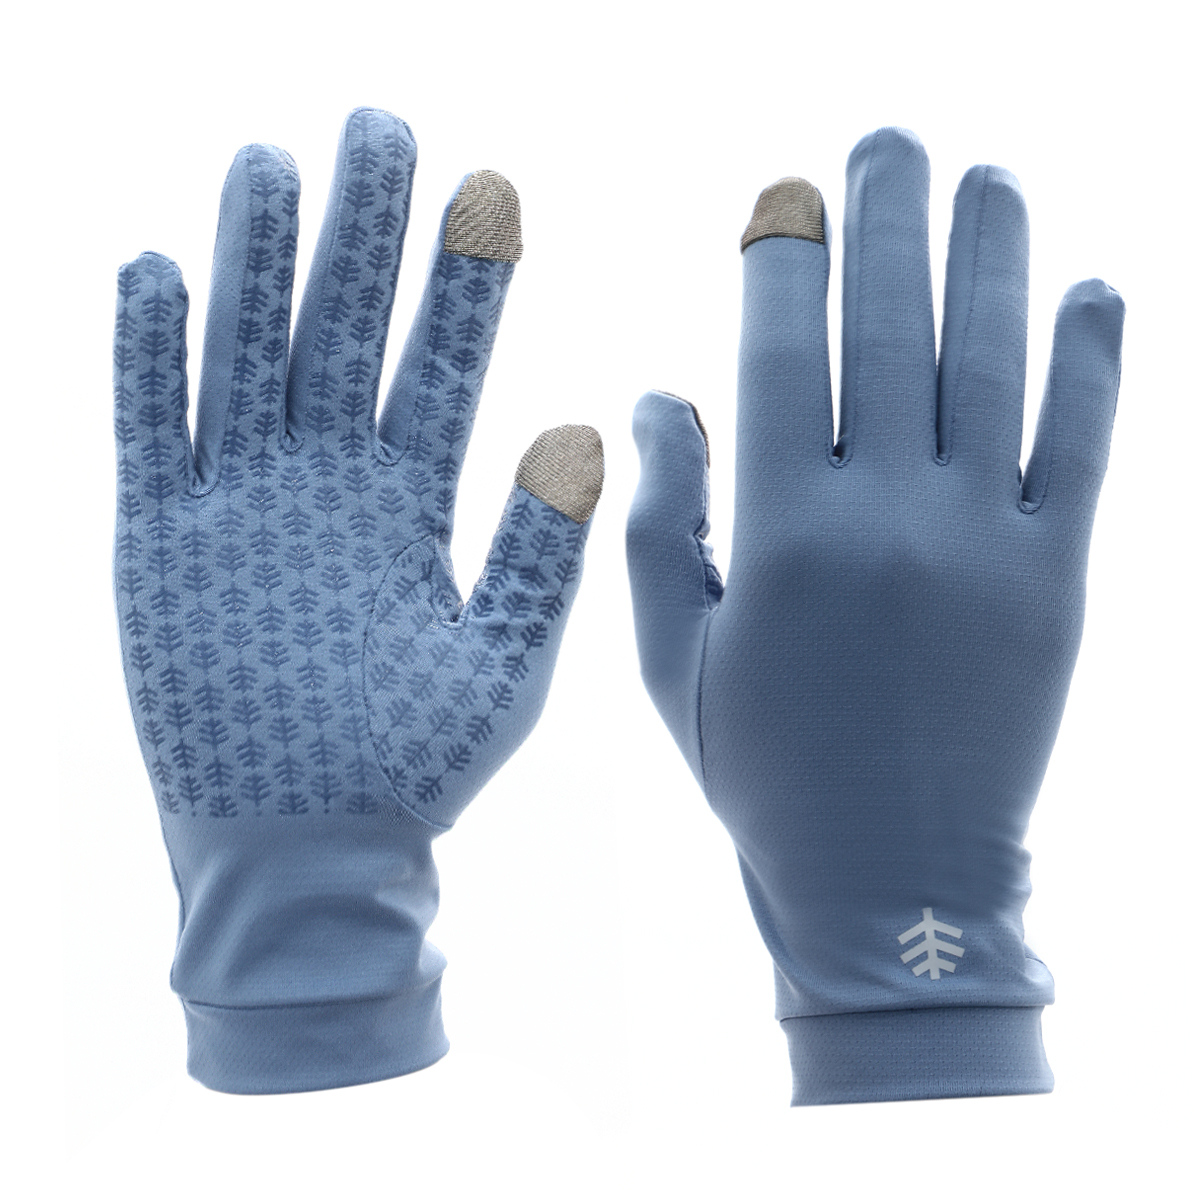 Buy Gannett UV Sun Protective Gloves - Moonlight Blue Online in